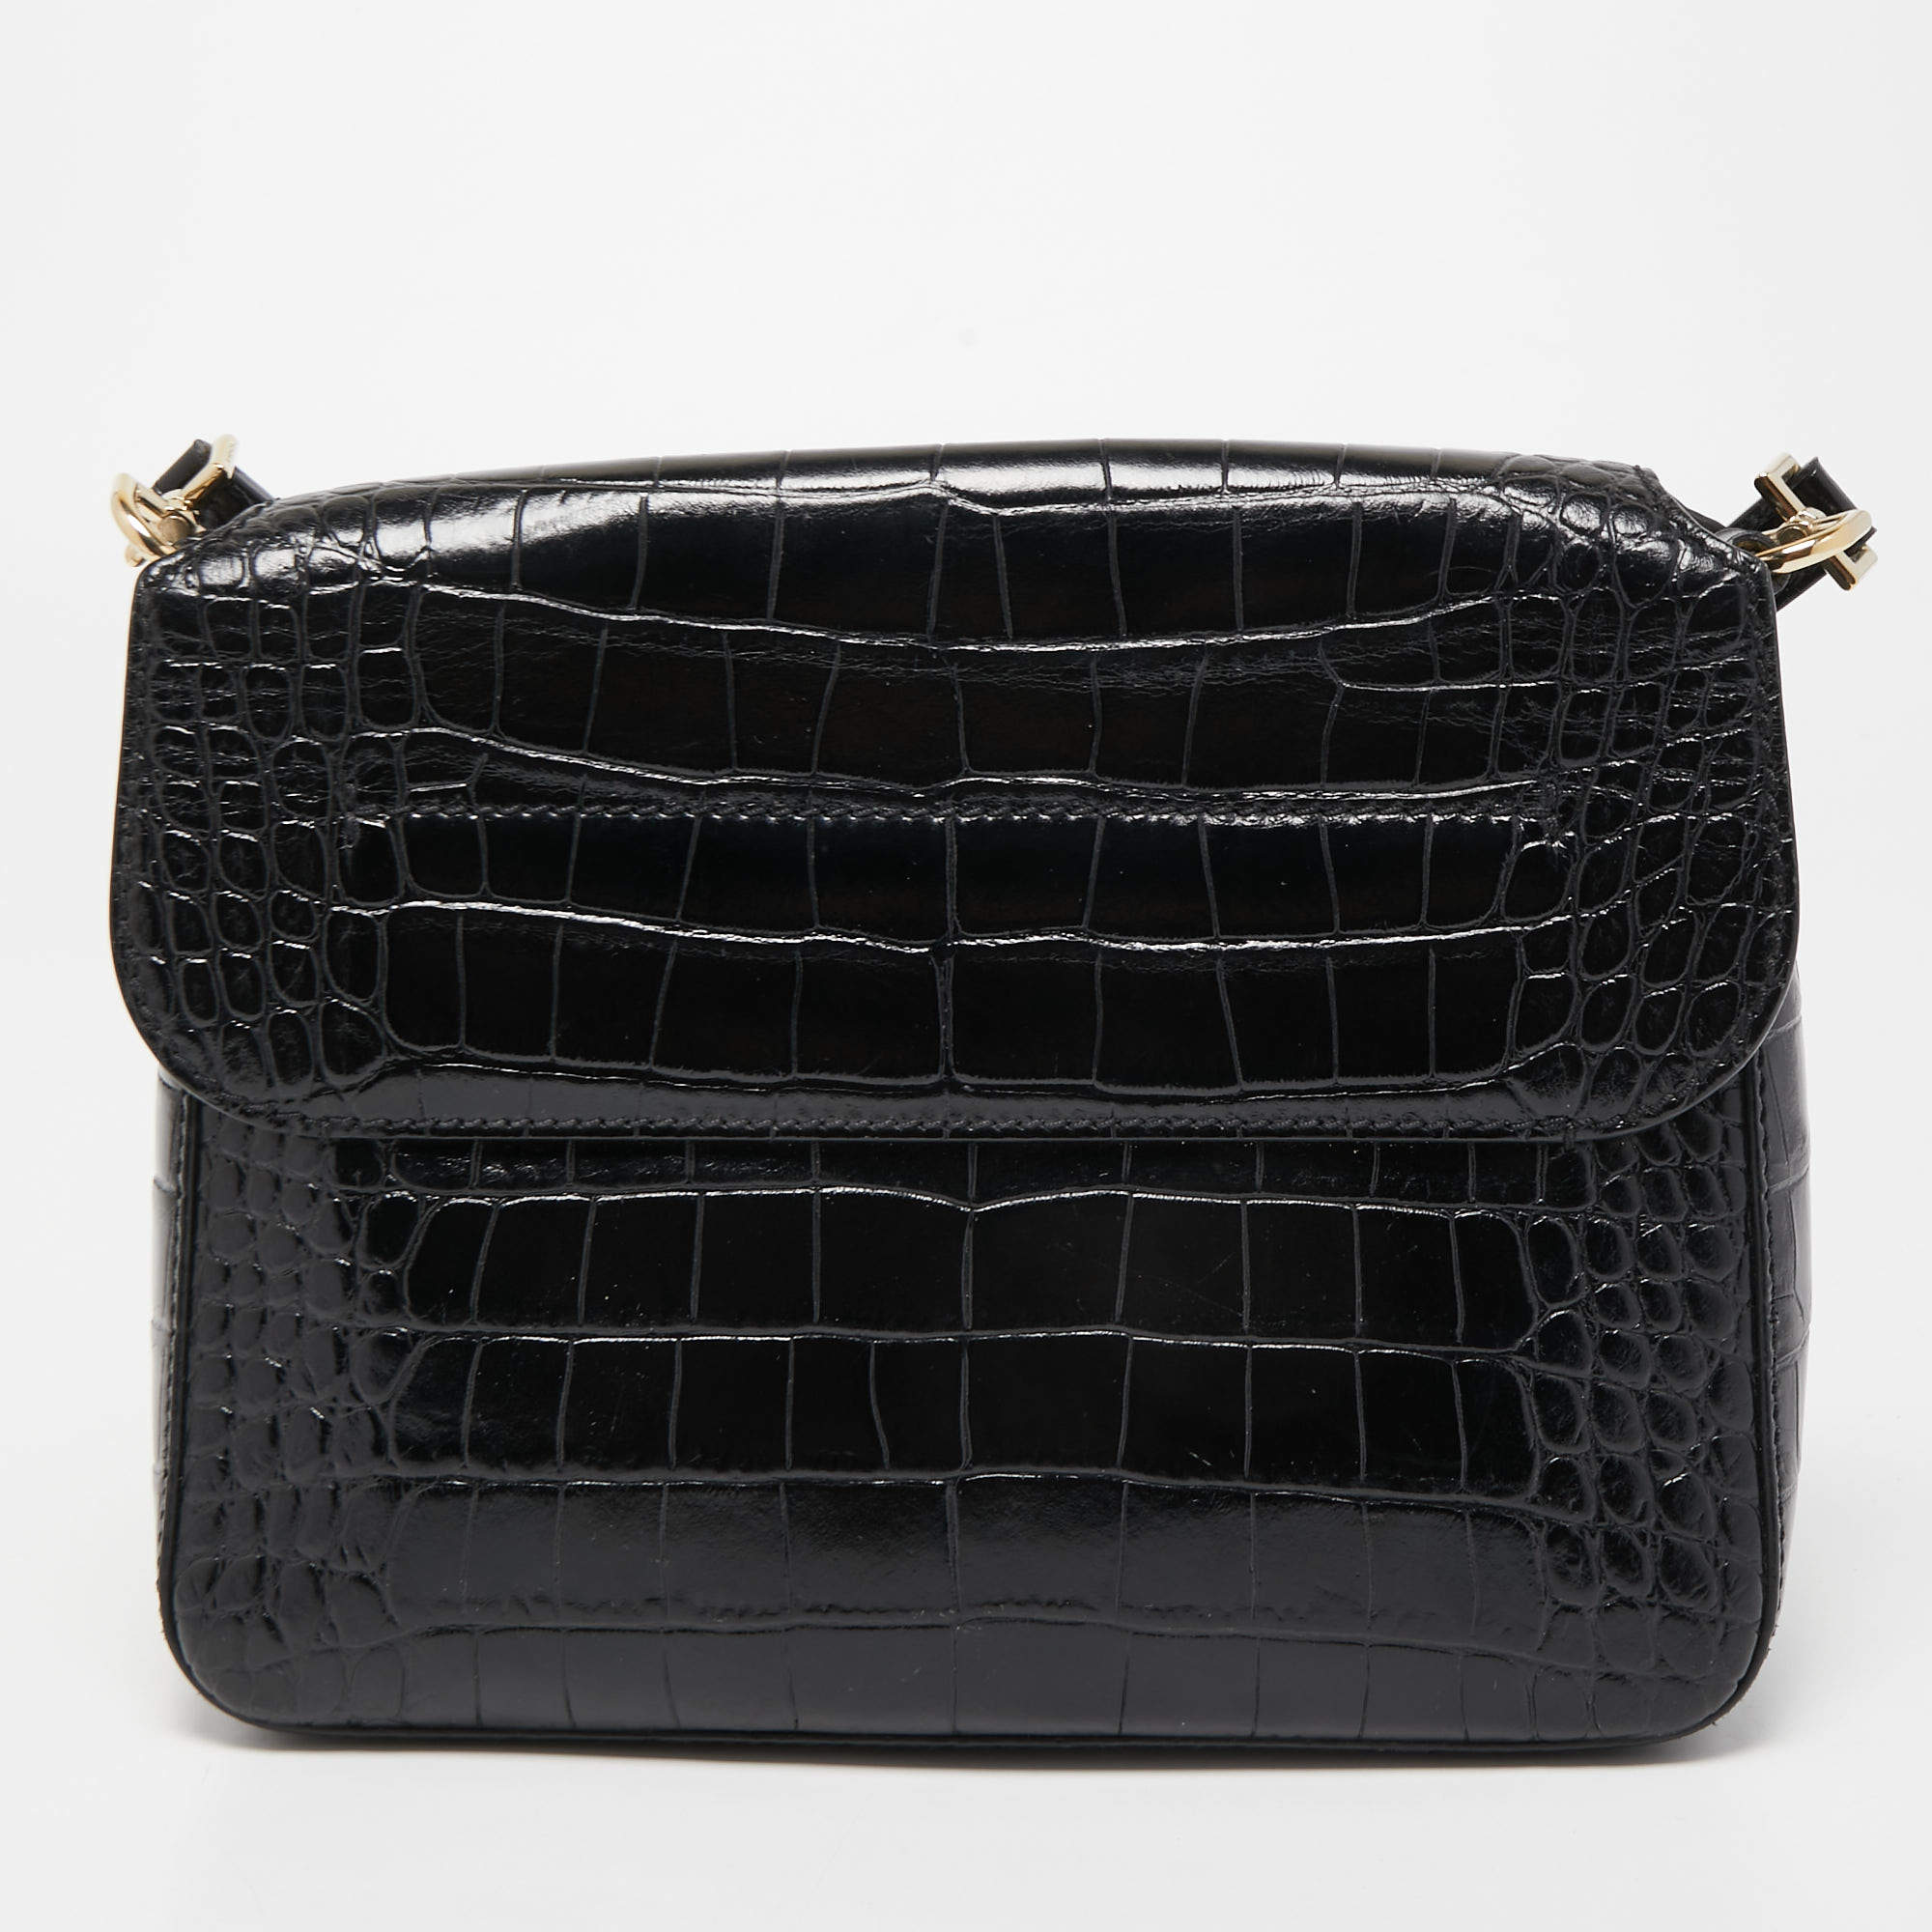 Givenchy Vintage Black Leather Bag S10150 | eBay